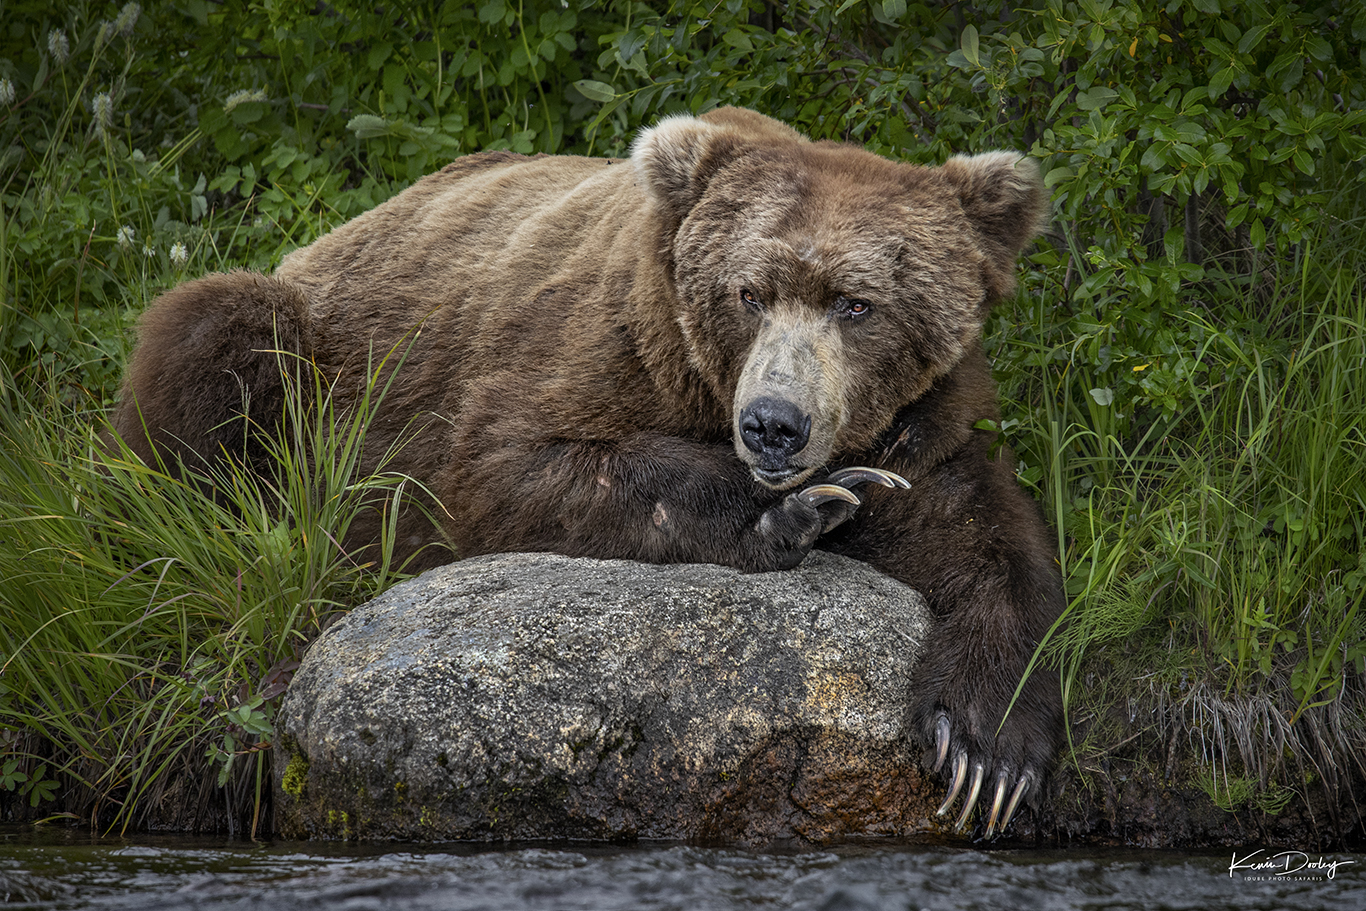 Explainer: Black bear or brown bear?